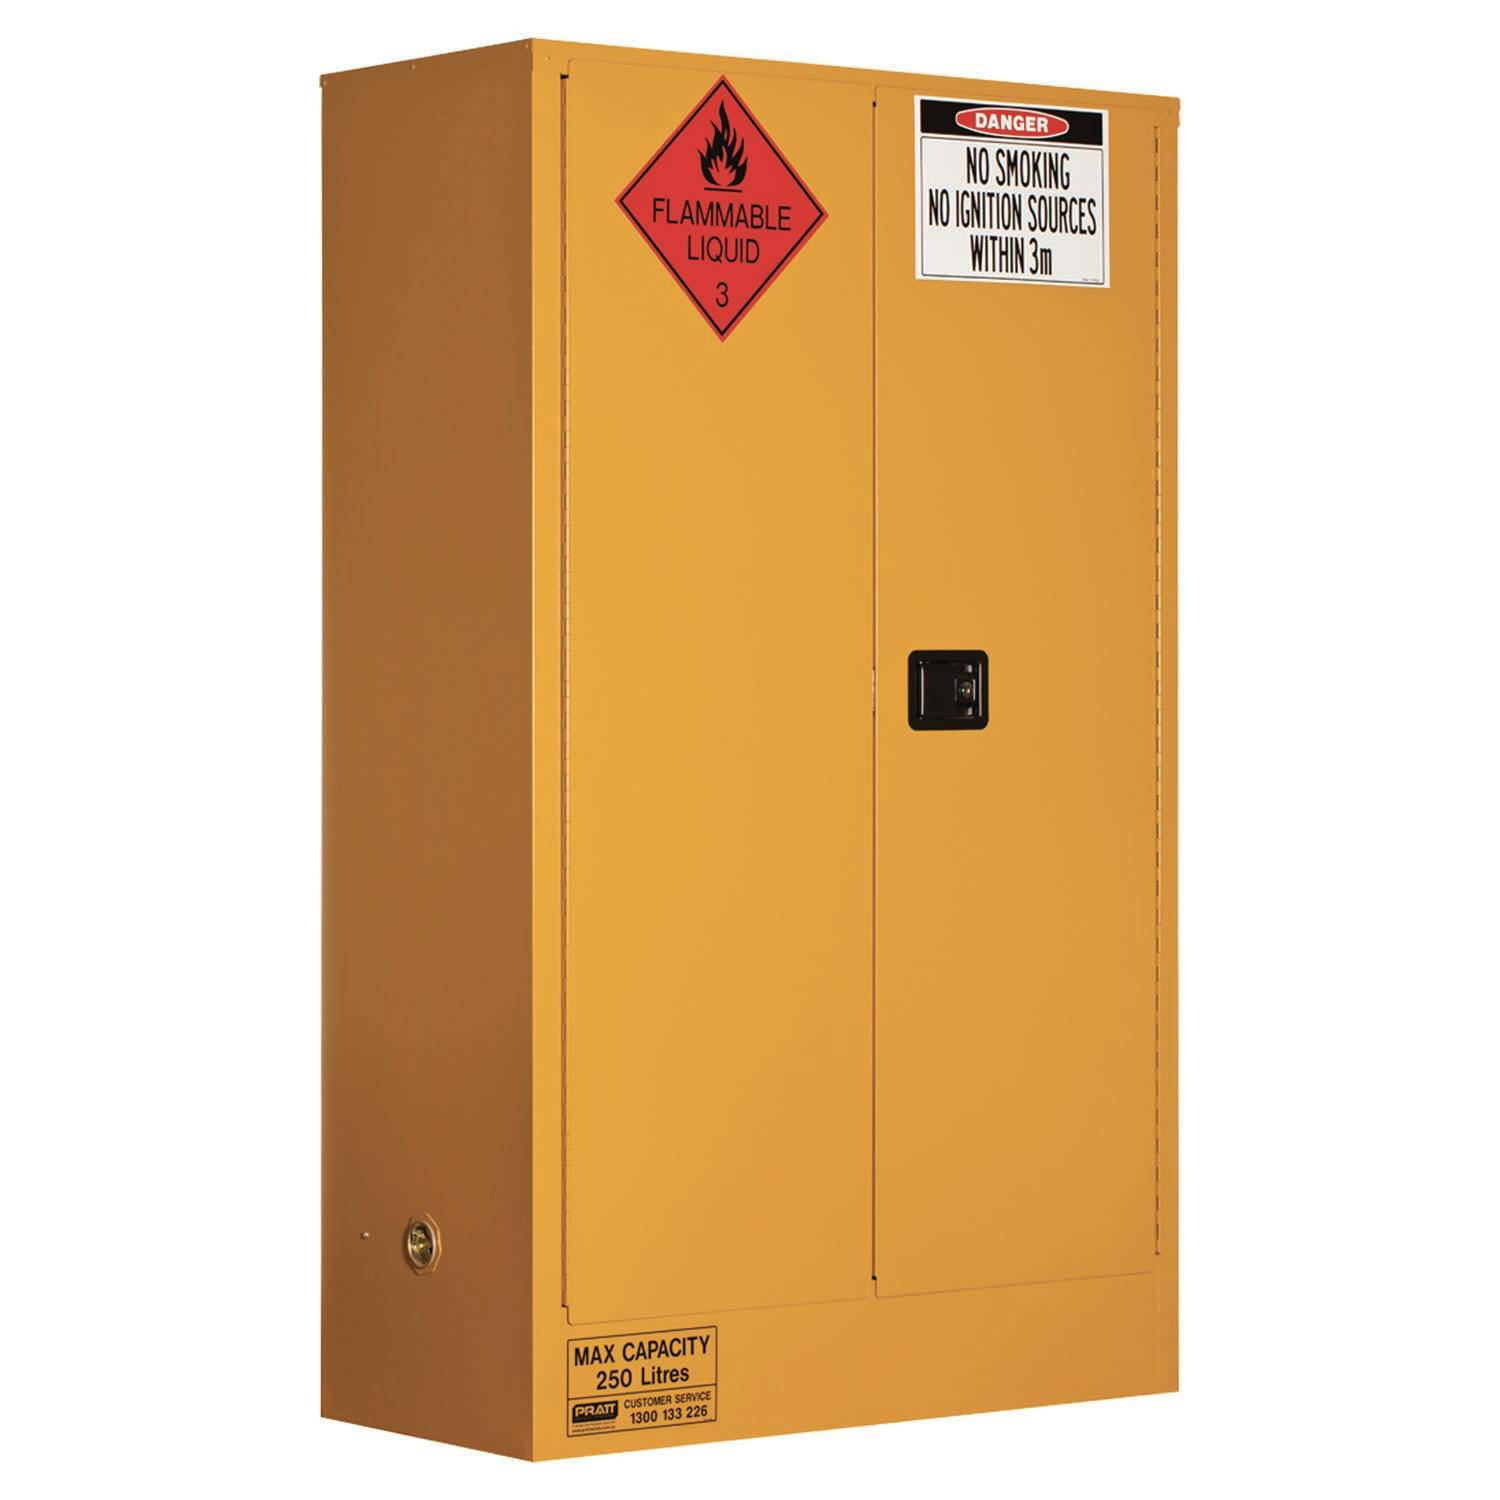 Pratt Flammable Liquid Storage Cabinet: 250L - 2 Doors - 3 Shelves